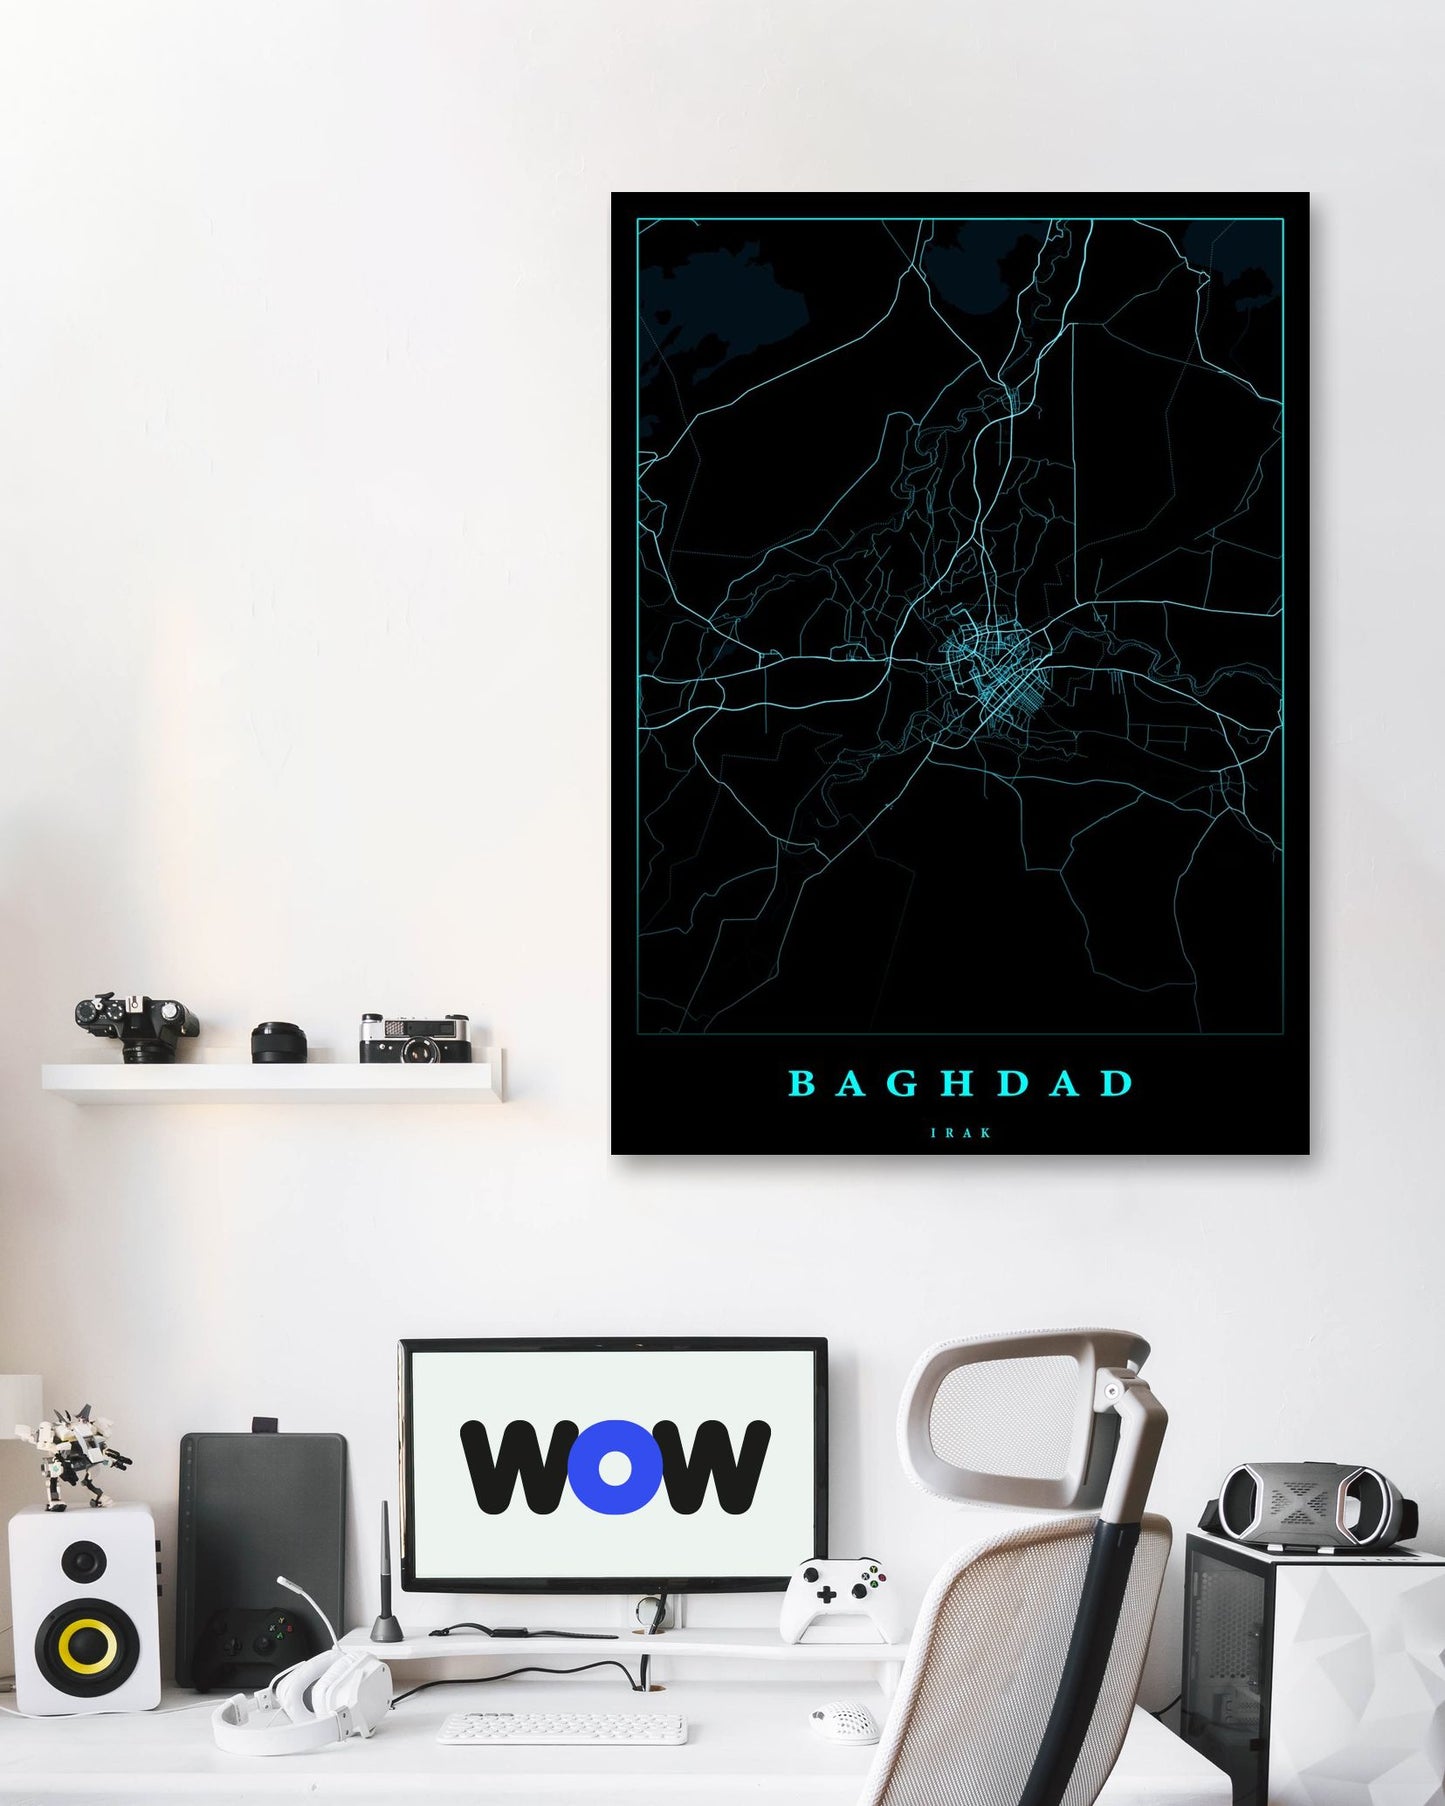 Baghdad iraq maps art - @SanDee15